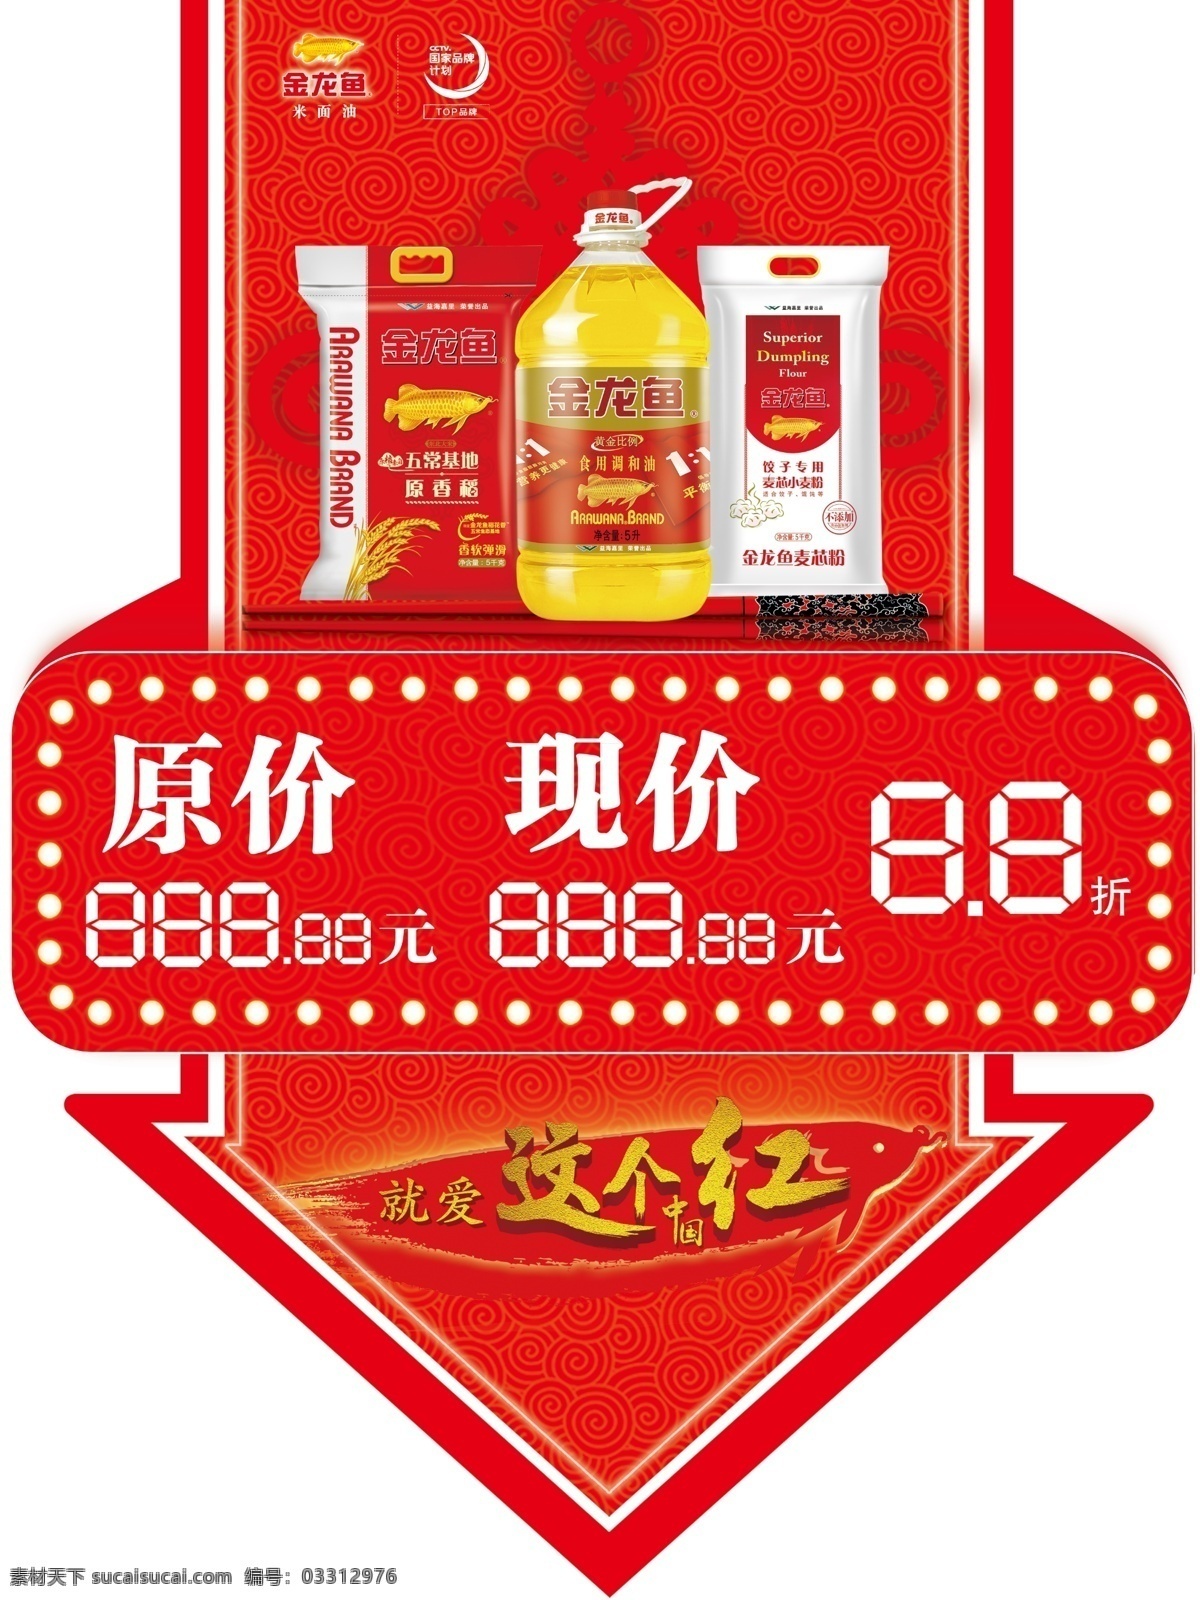 金龙鱼油 金龙鱼面 金龙鱼米 中国结 金龙鱼 logo 红色背景 标签 分层